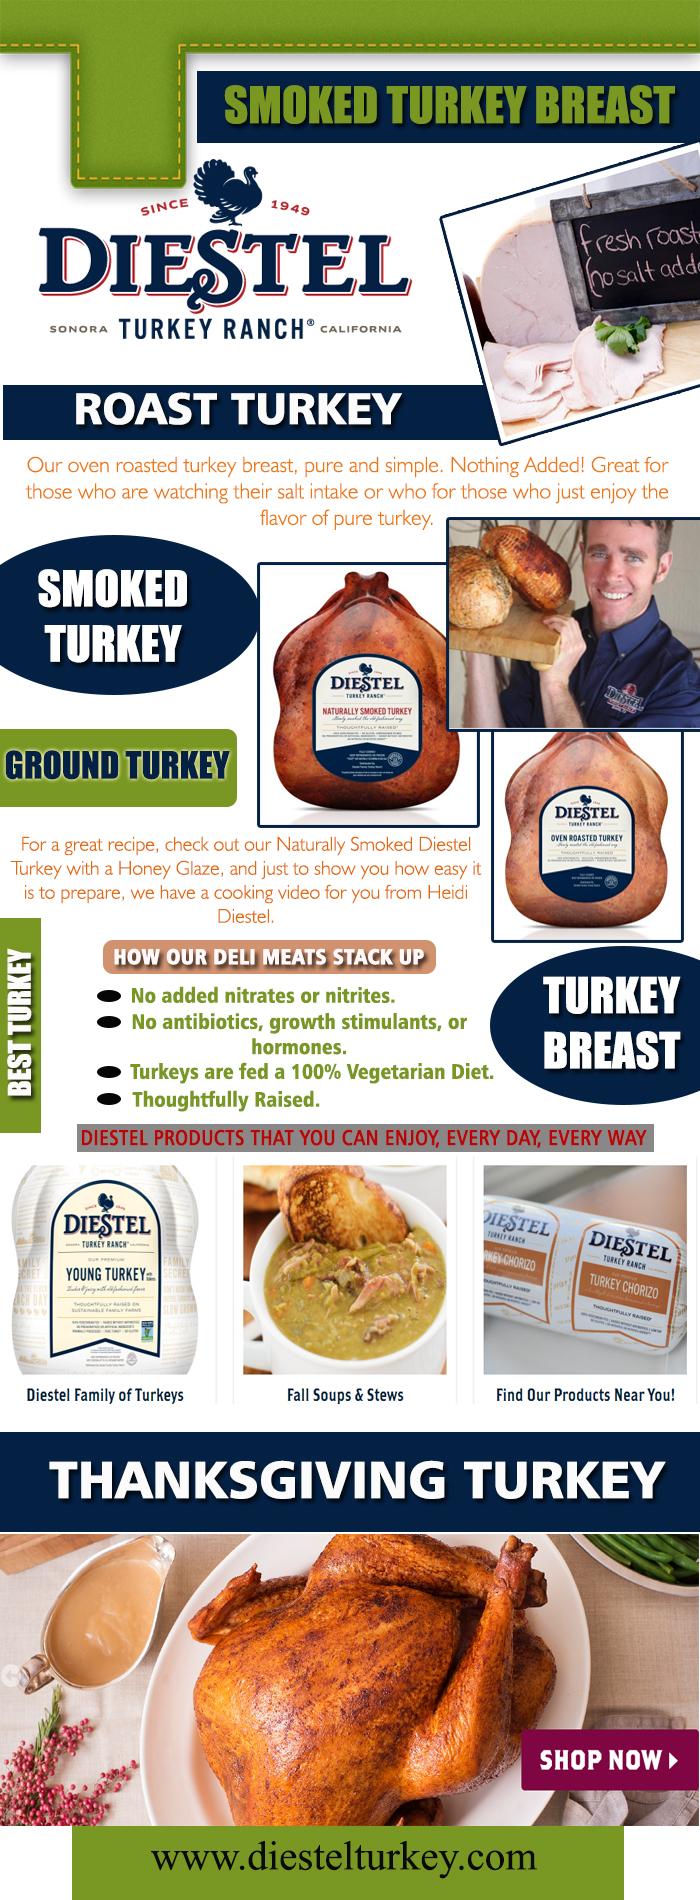 Best Turkey